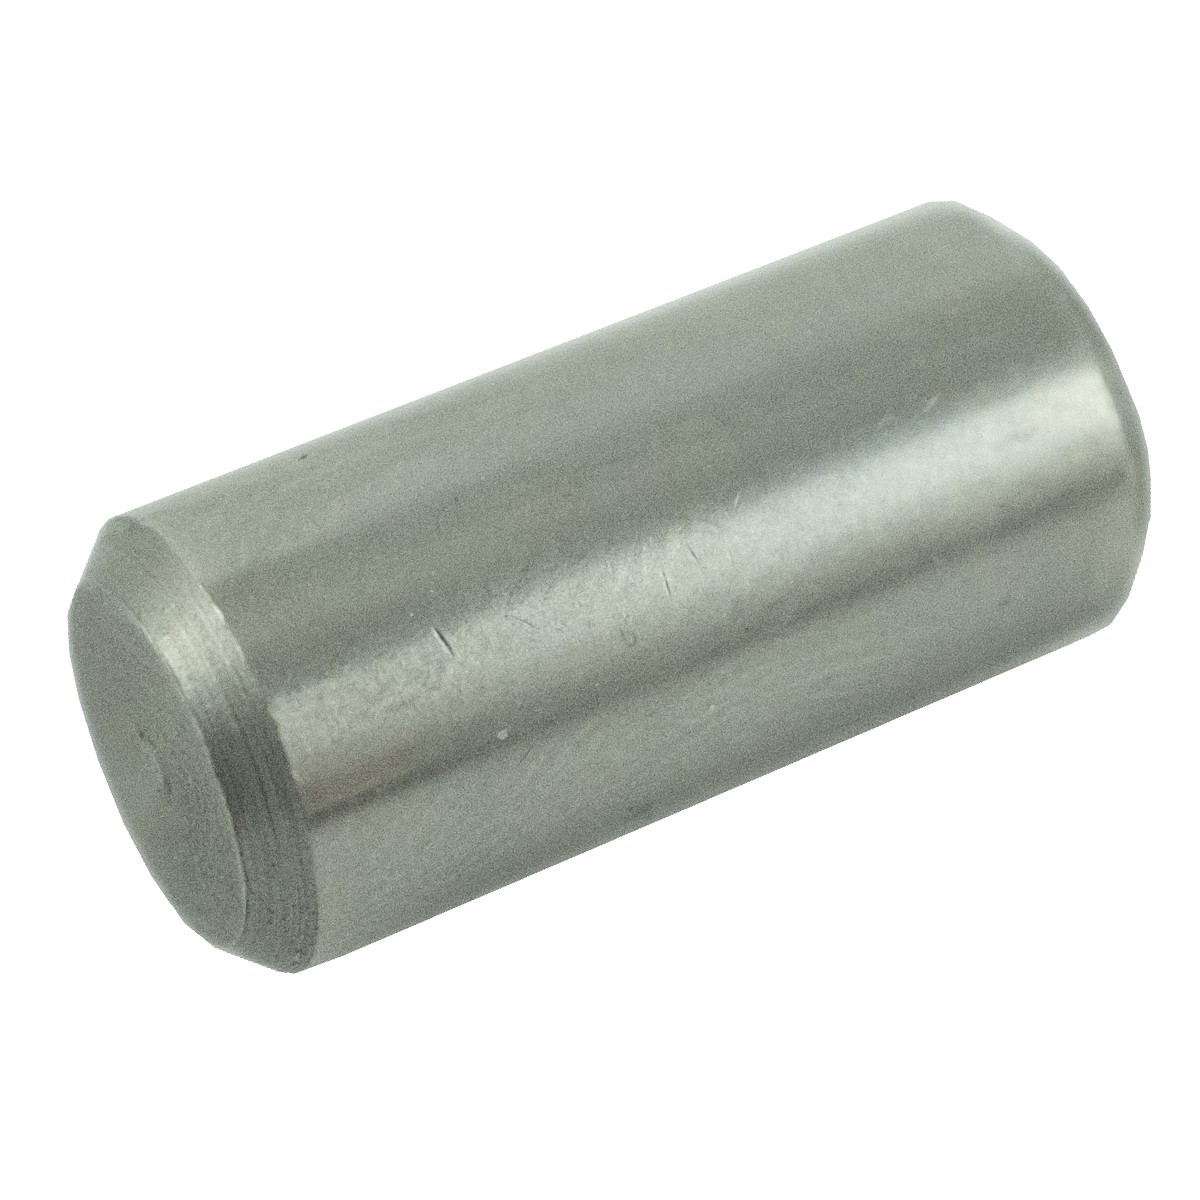 Wedge, locking pin 10 x 22 mm / LS XJ25 / LS T3.50 / S423102010 / 40029102